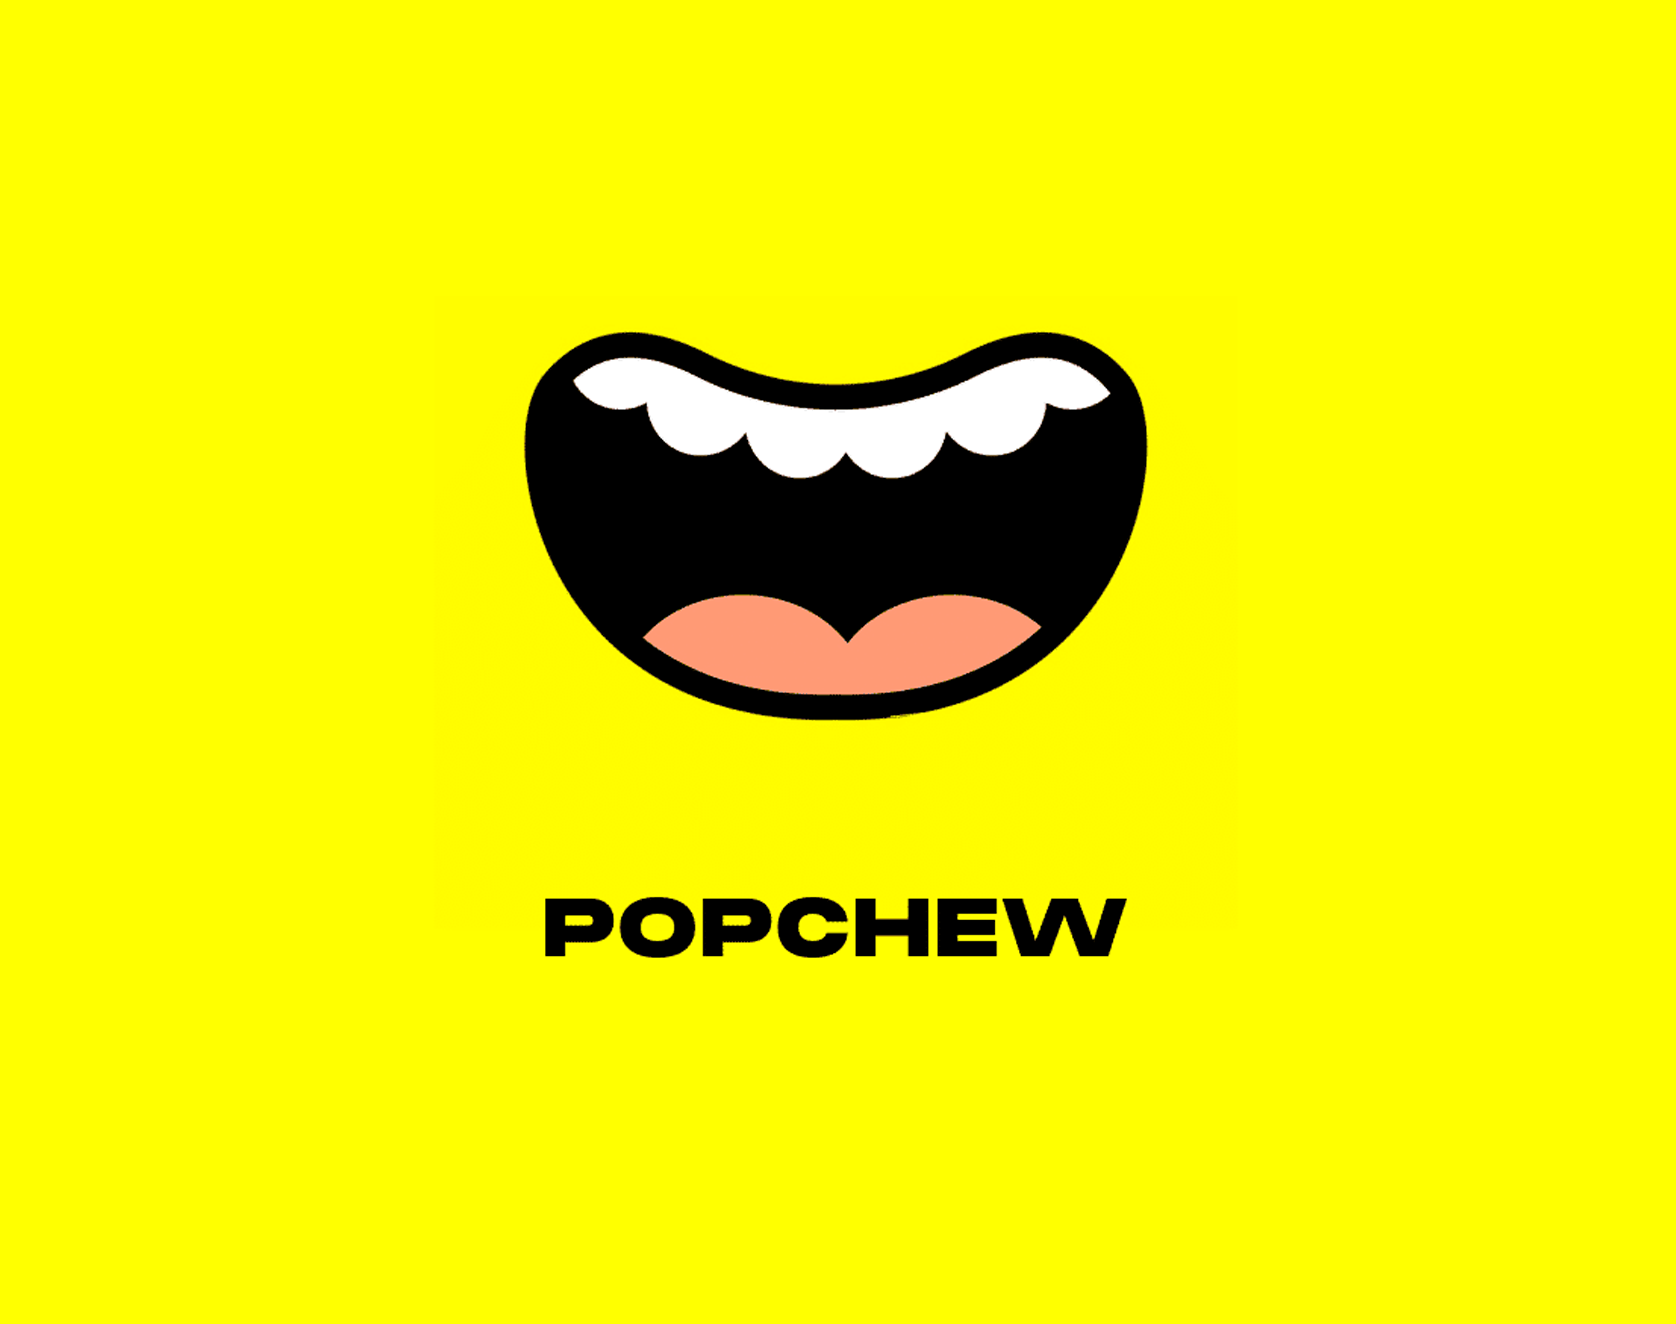 Popchew